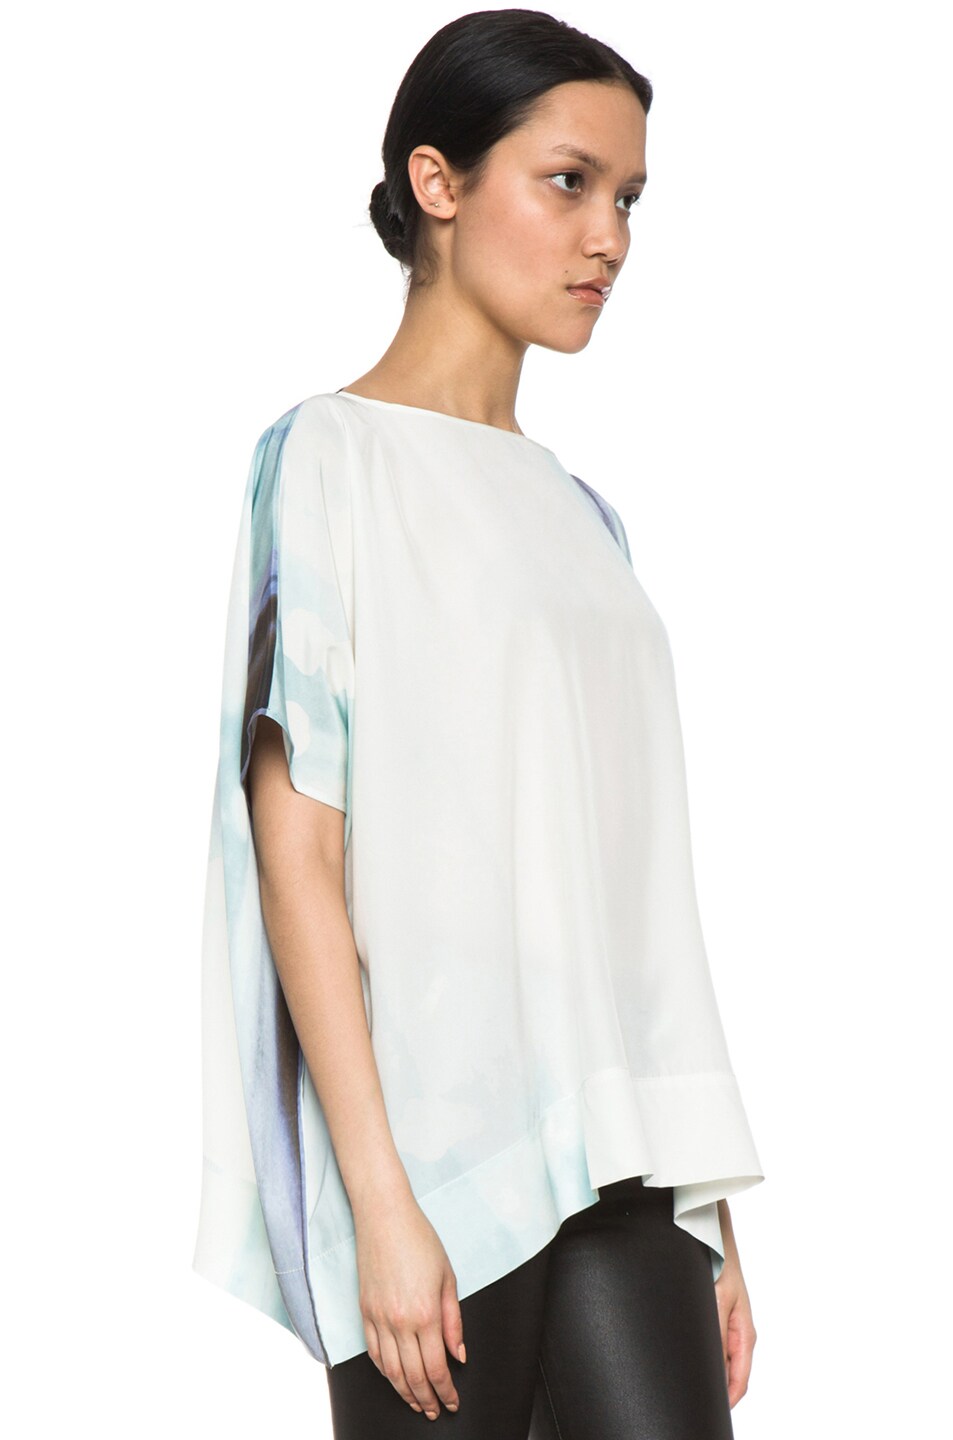 Diane von Furstenberg New Hanky Silk Top in Ethereal | FWRD